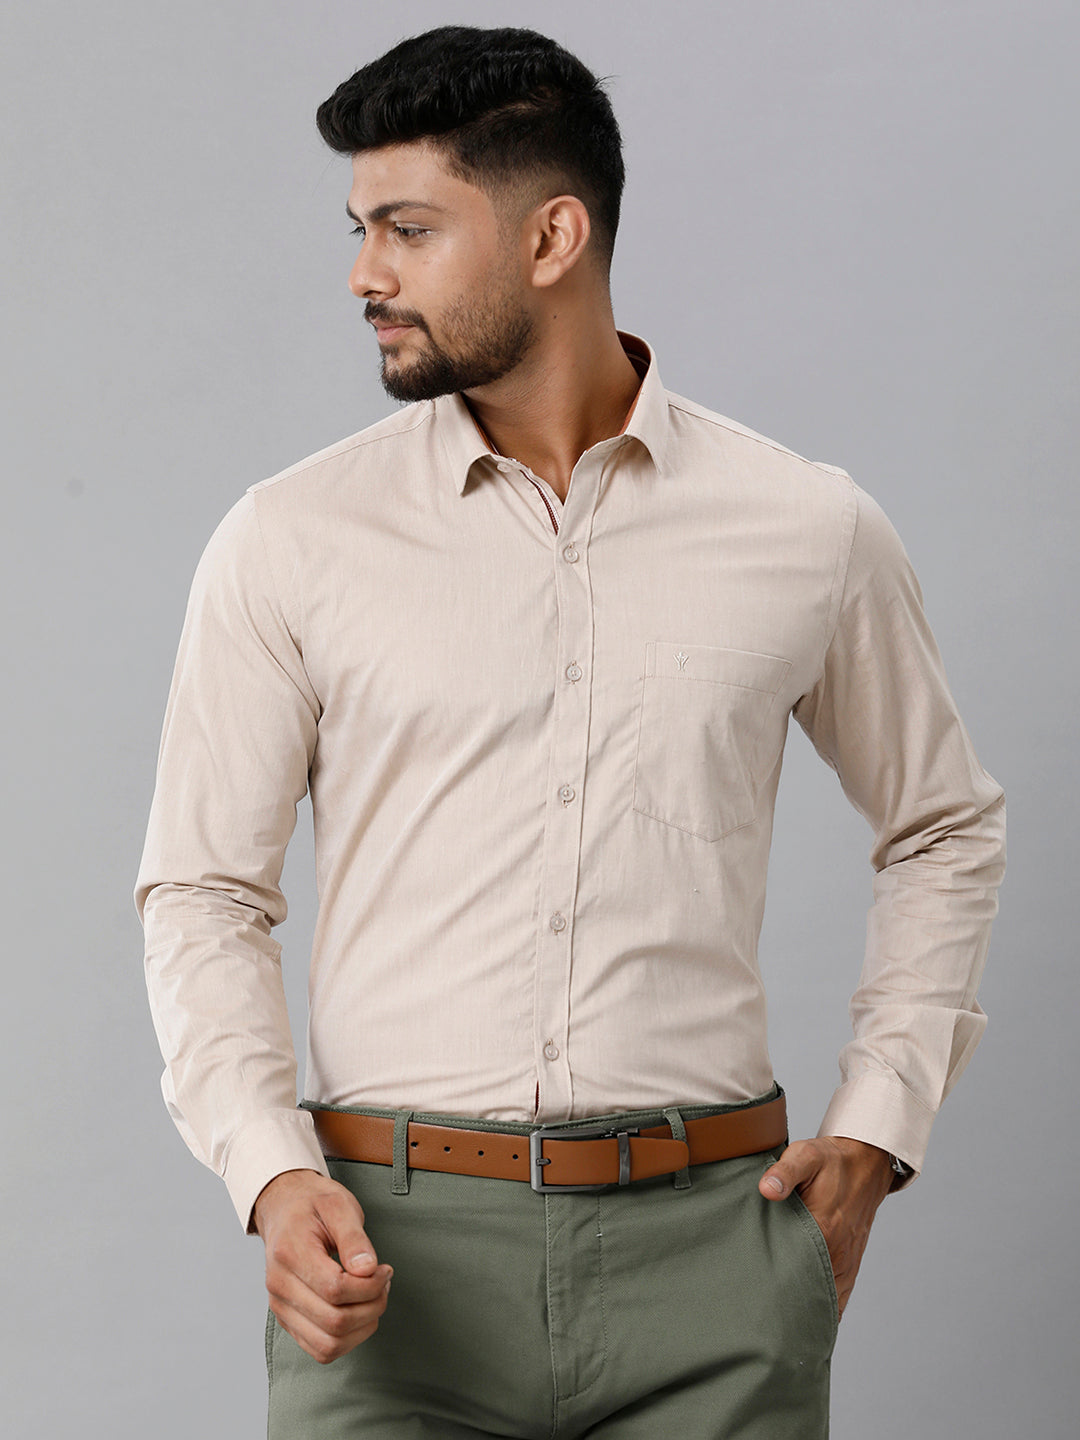 Mens Premium Cotton Formal Shirt Full Sleeves Light Brown MH G113